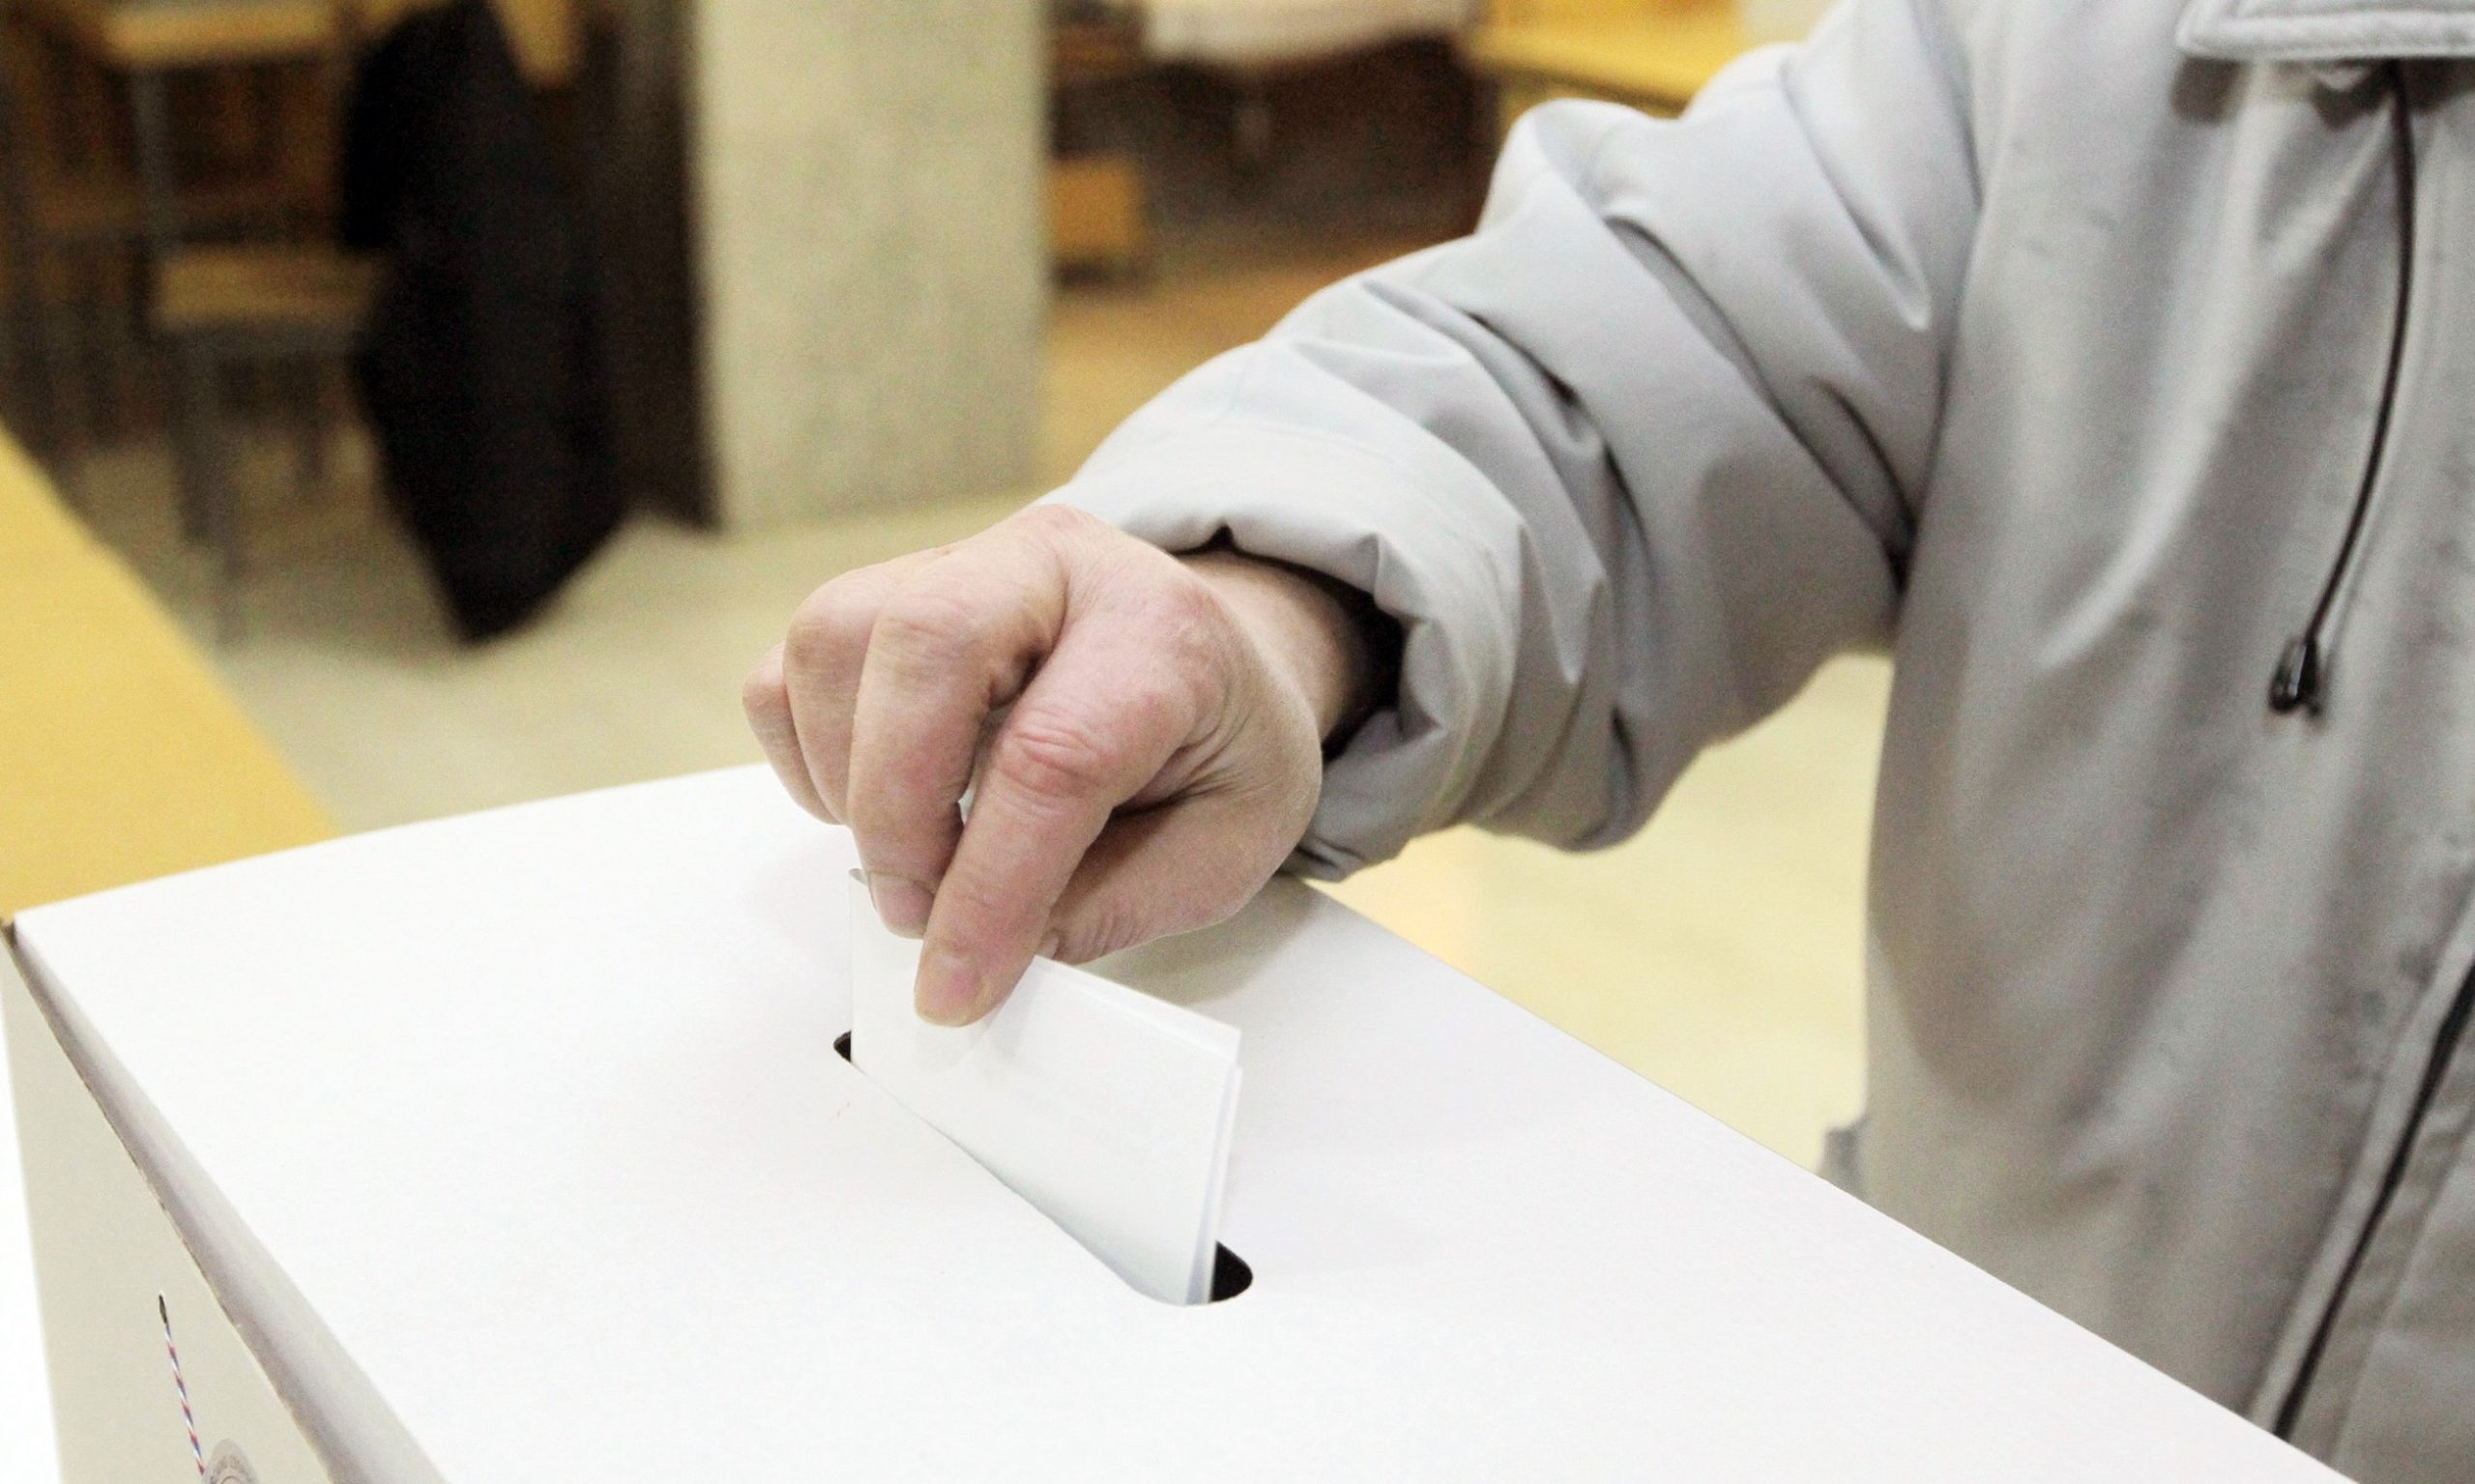 28.12.2014., Koprivnica - Na izbore za predsjednicu ili predsjednika Hrvatske u Koprivnici je izaslo je oko 50% glasaca. Photo: Marijan Susenj/PIXSELL